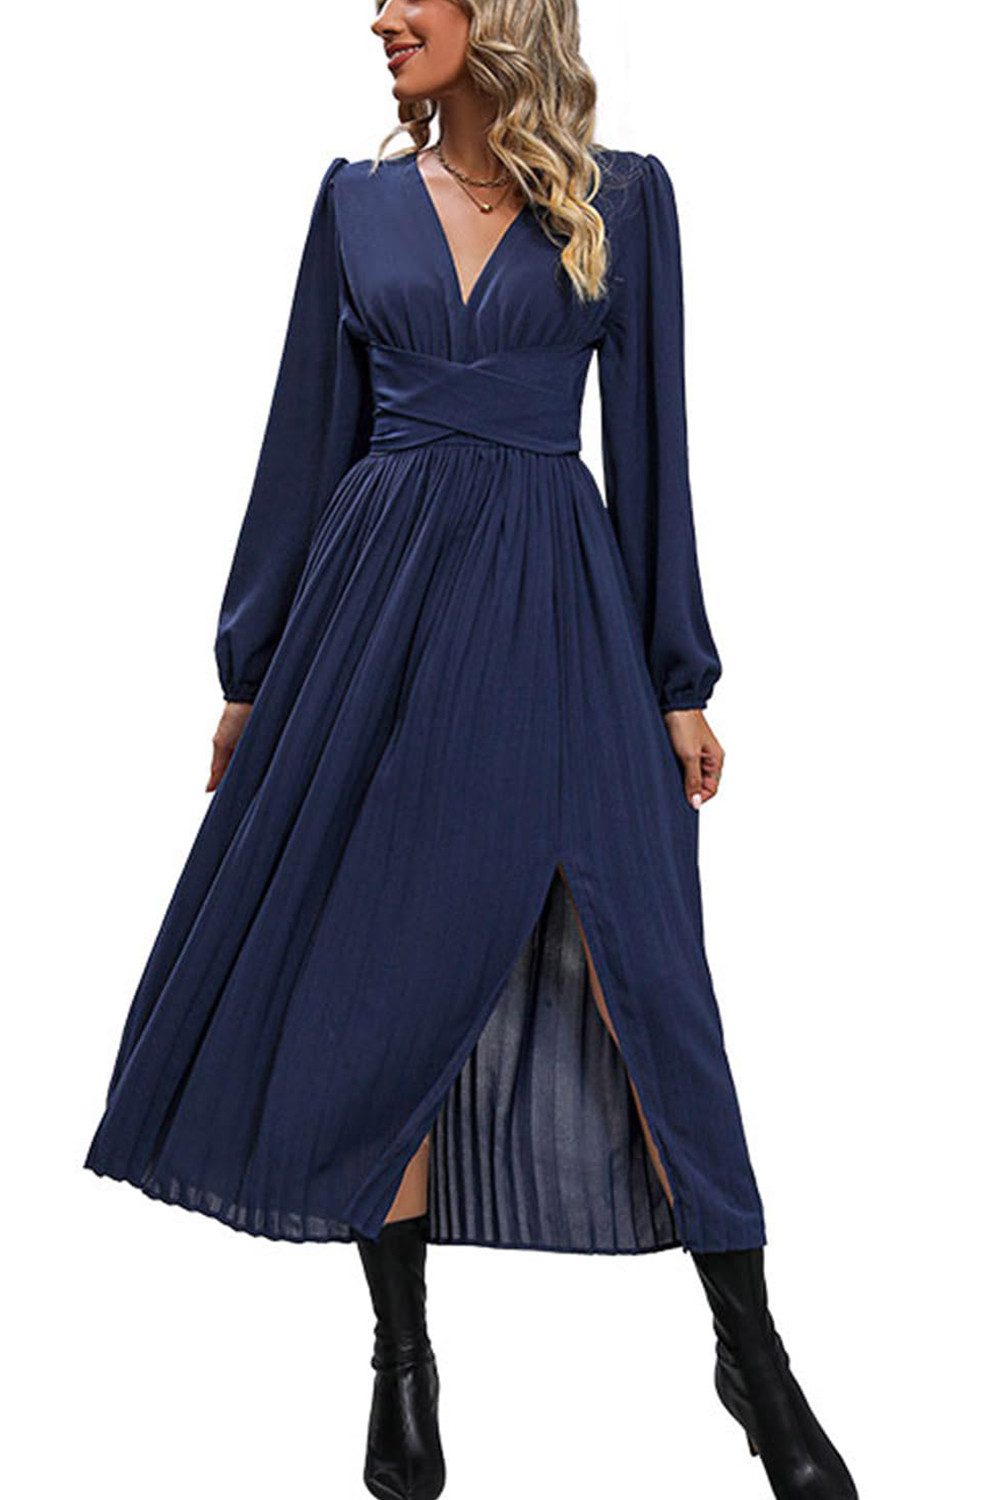 B.X Abendkleid Damen V-Ausschnitt In der Taille binden Cocktailkleid Abendkleid A-Linien-Kleid Einfarbiges Stilvolles plissiertes Kleid Cocktailkleid